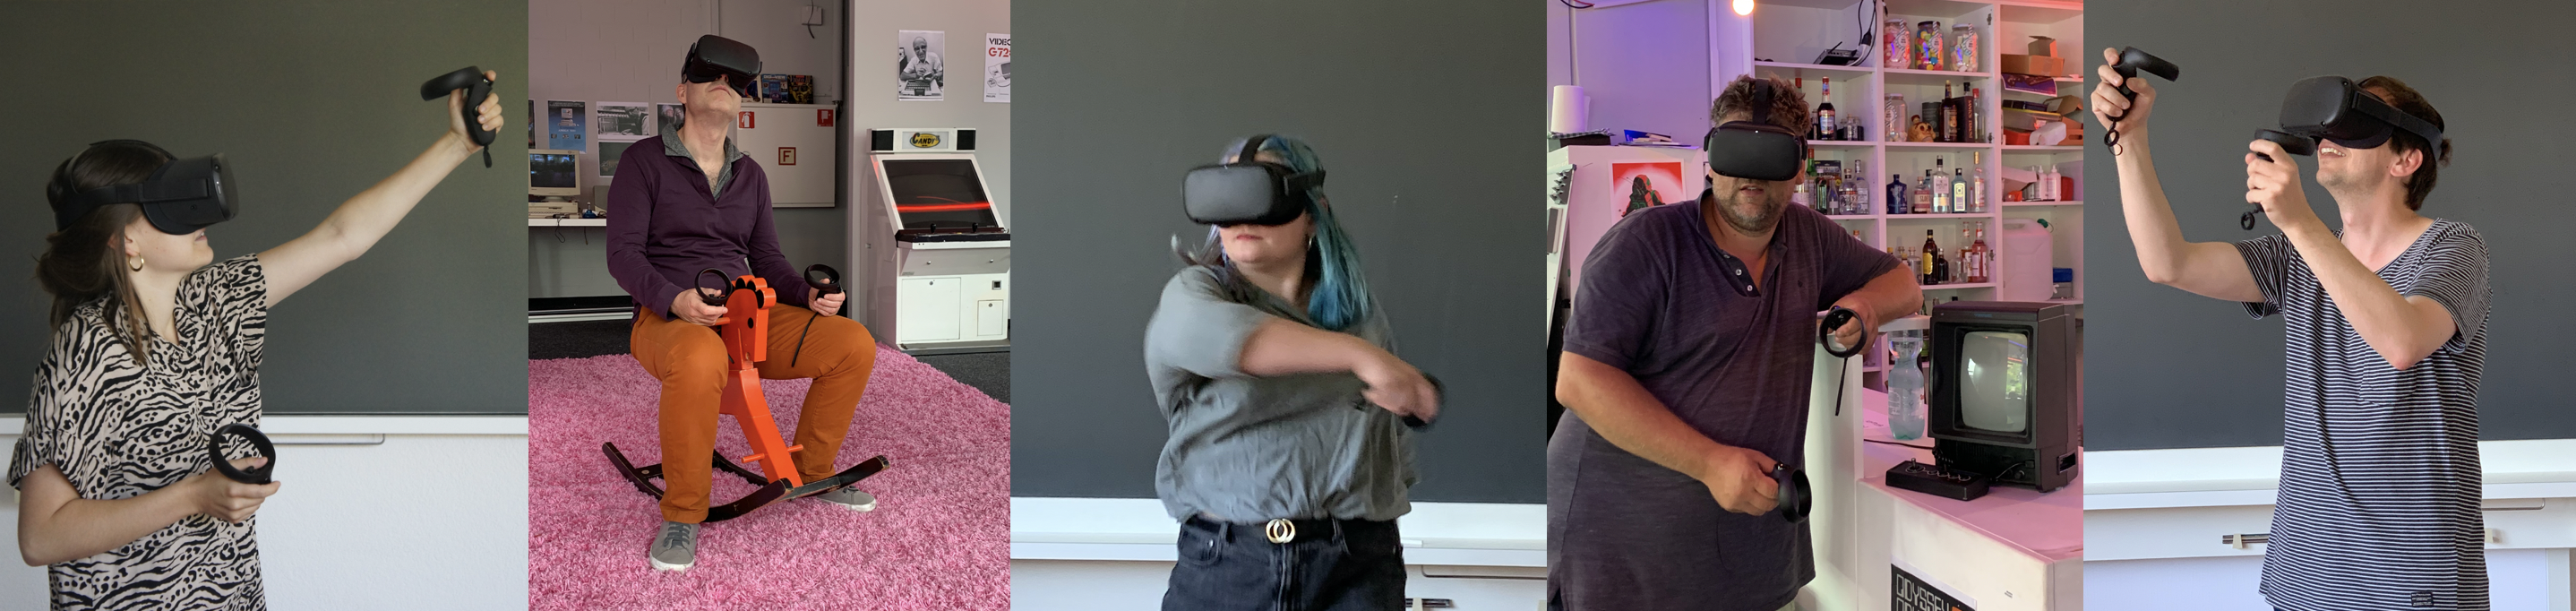 Personen mit VR-Brille